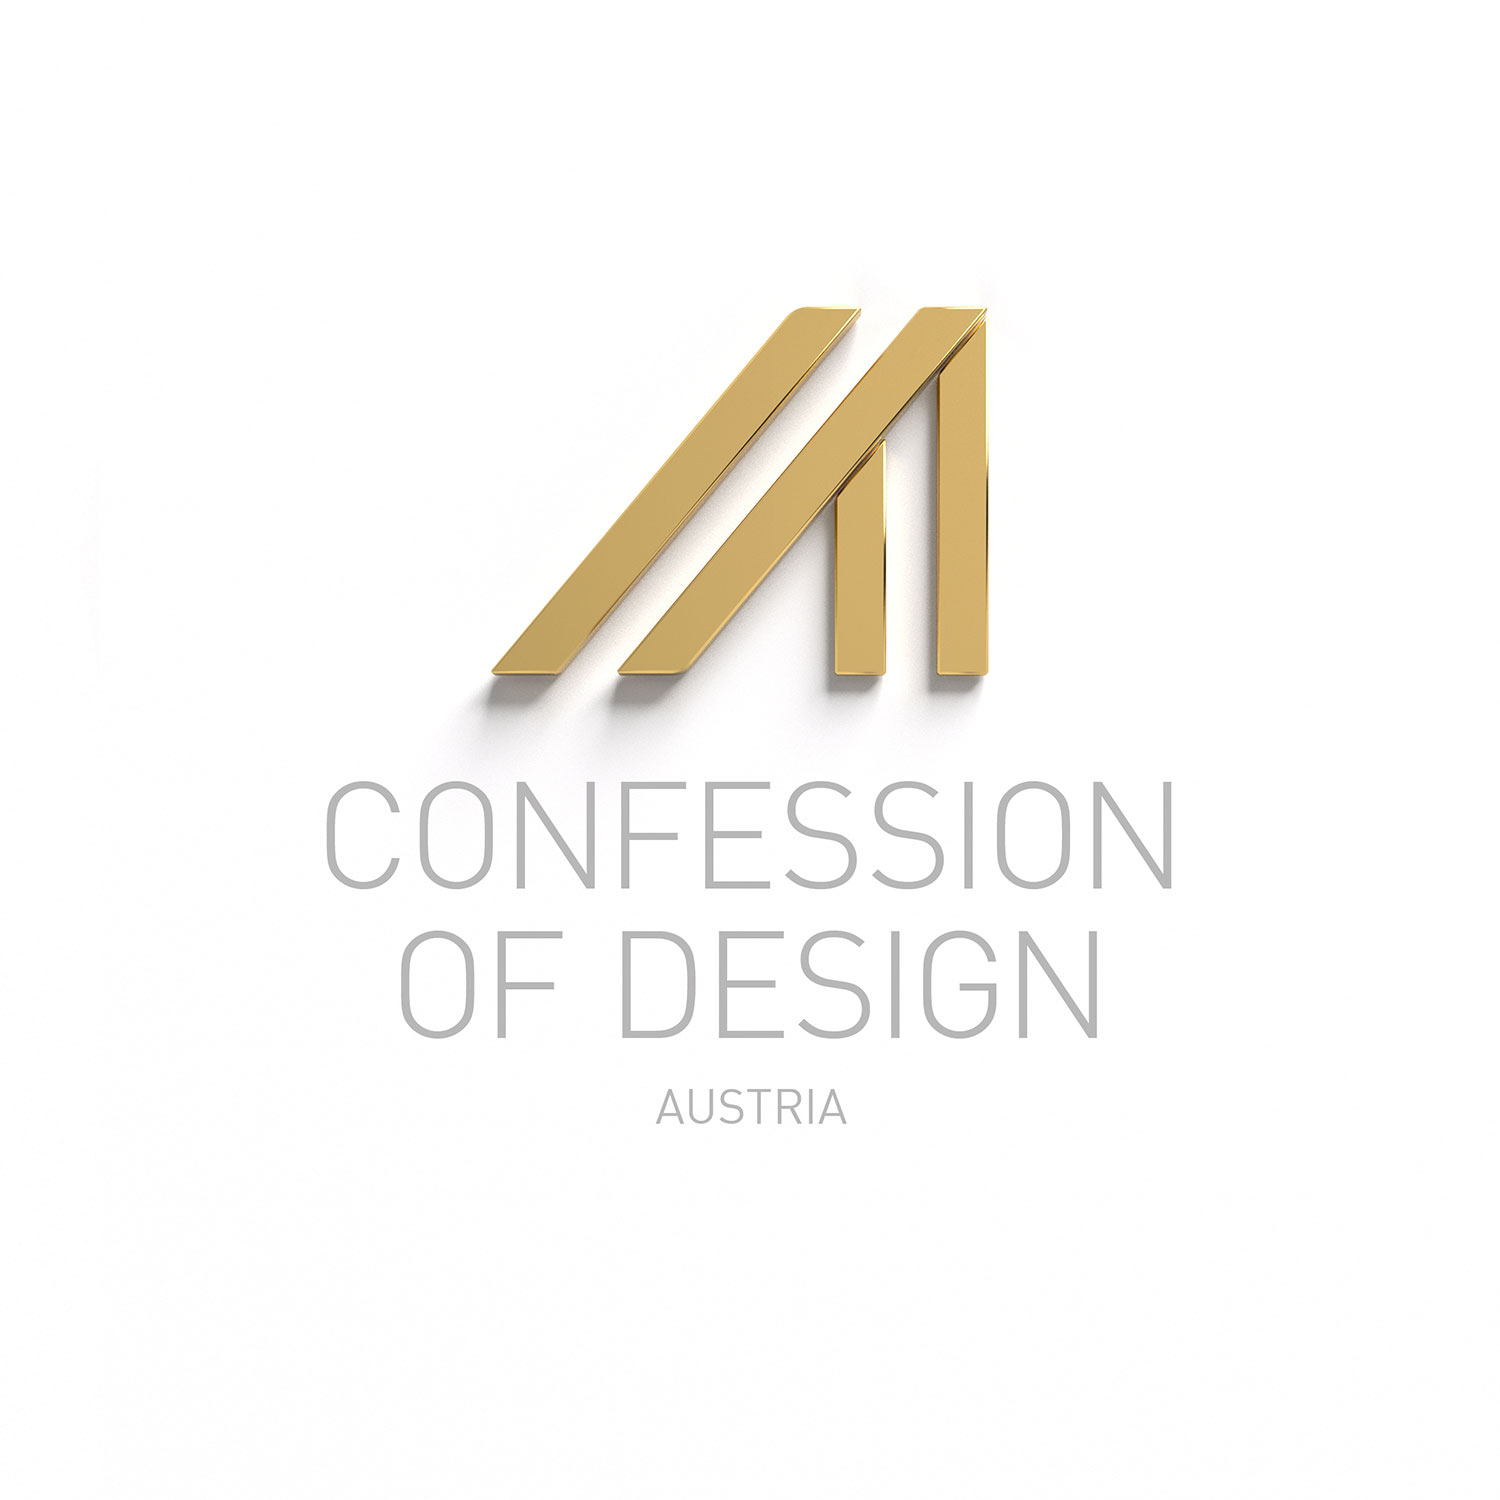 AUSTRIA_A_Confession-Of-Design-Milano-01.jpg